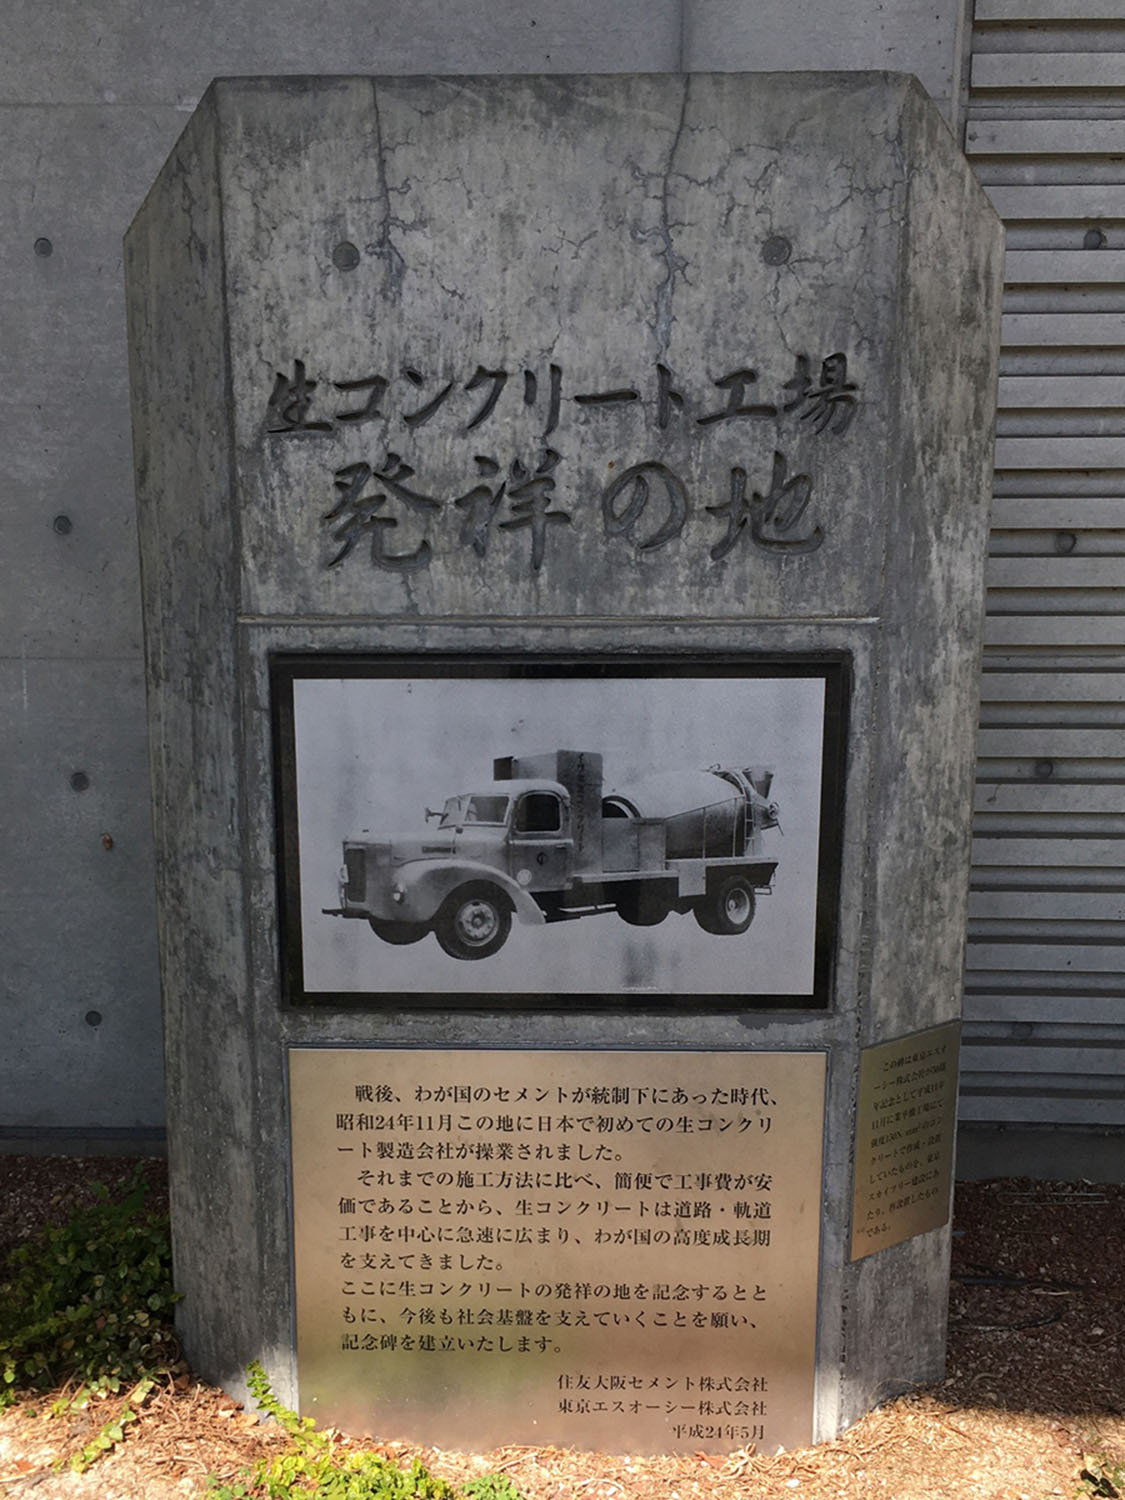 東京スカイツリーの足元に設置されている、「生コンクリート工場発祥の地」碑。1949年、この地に日本初の生コンクリート製造会社が設立されたそう。